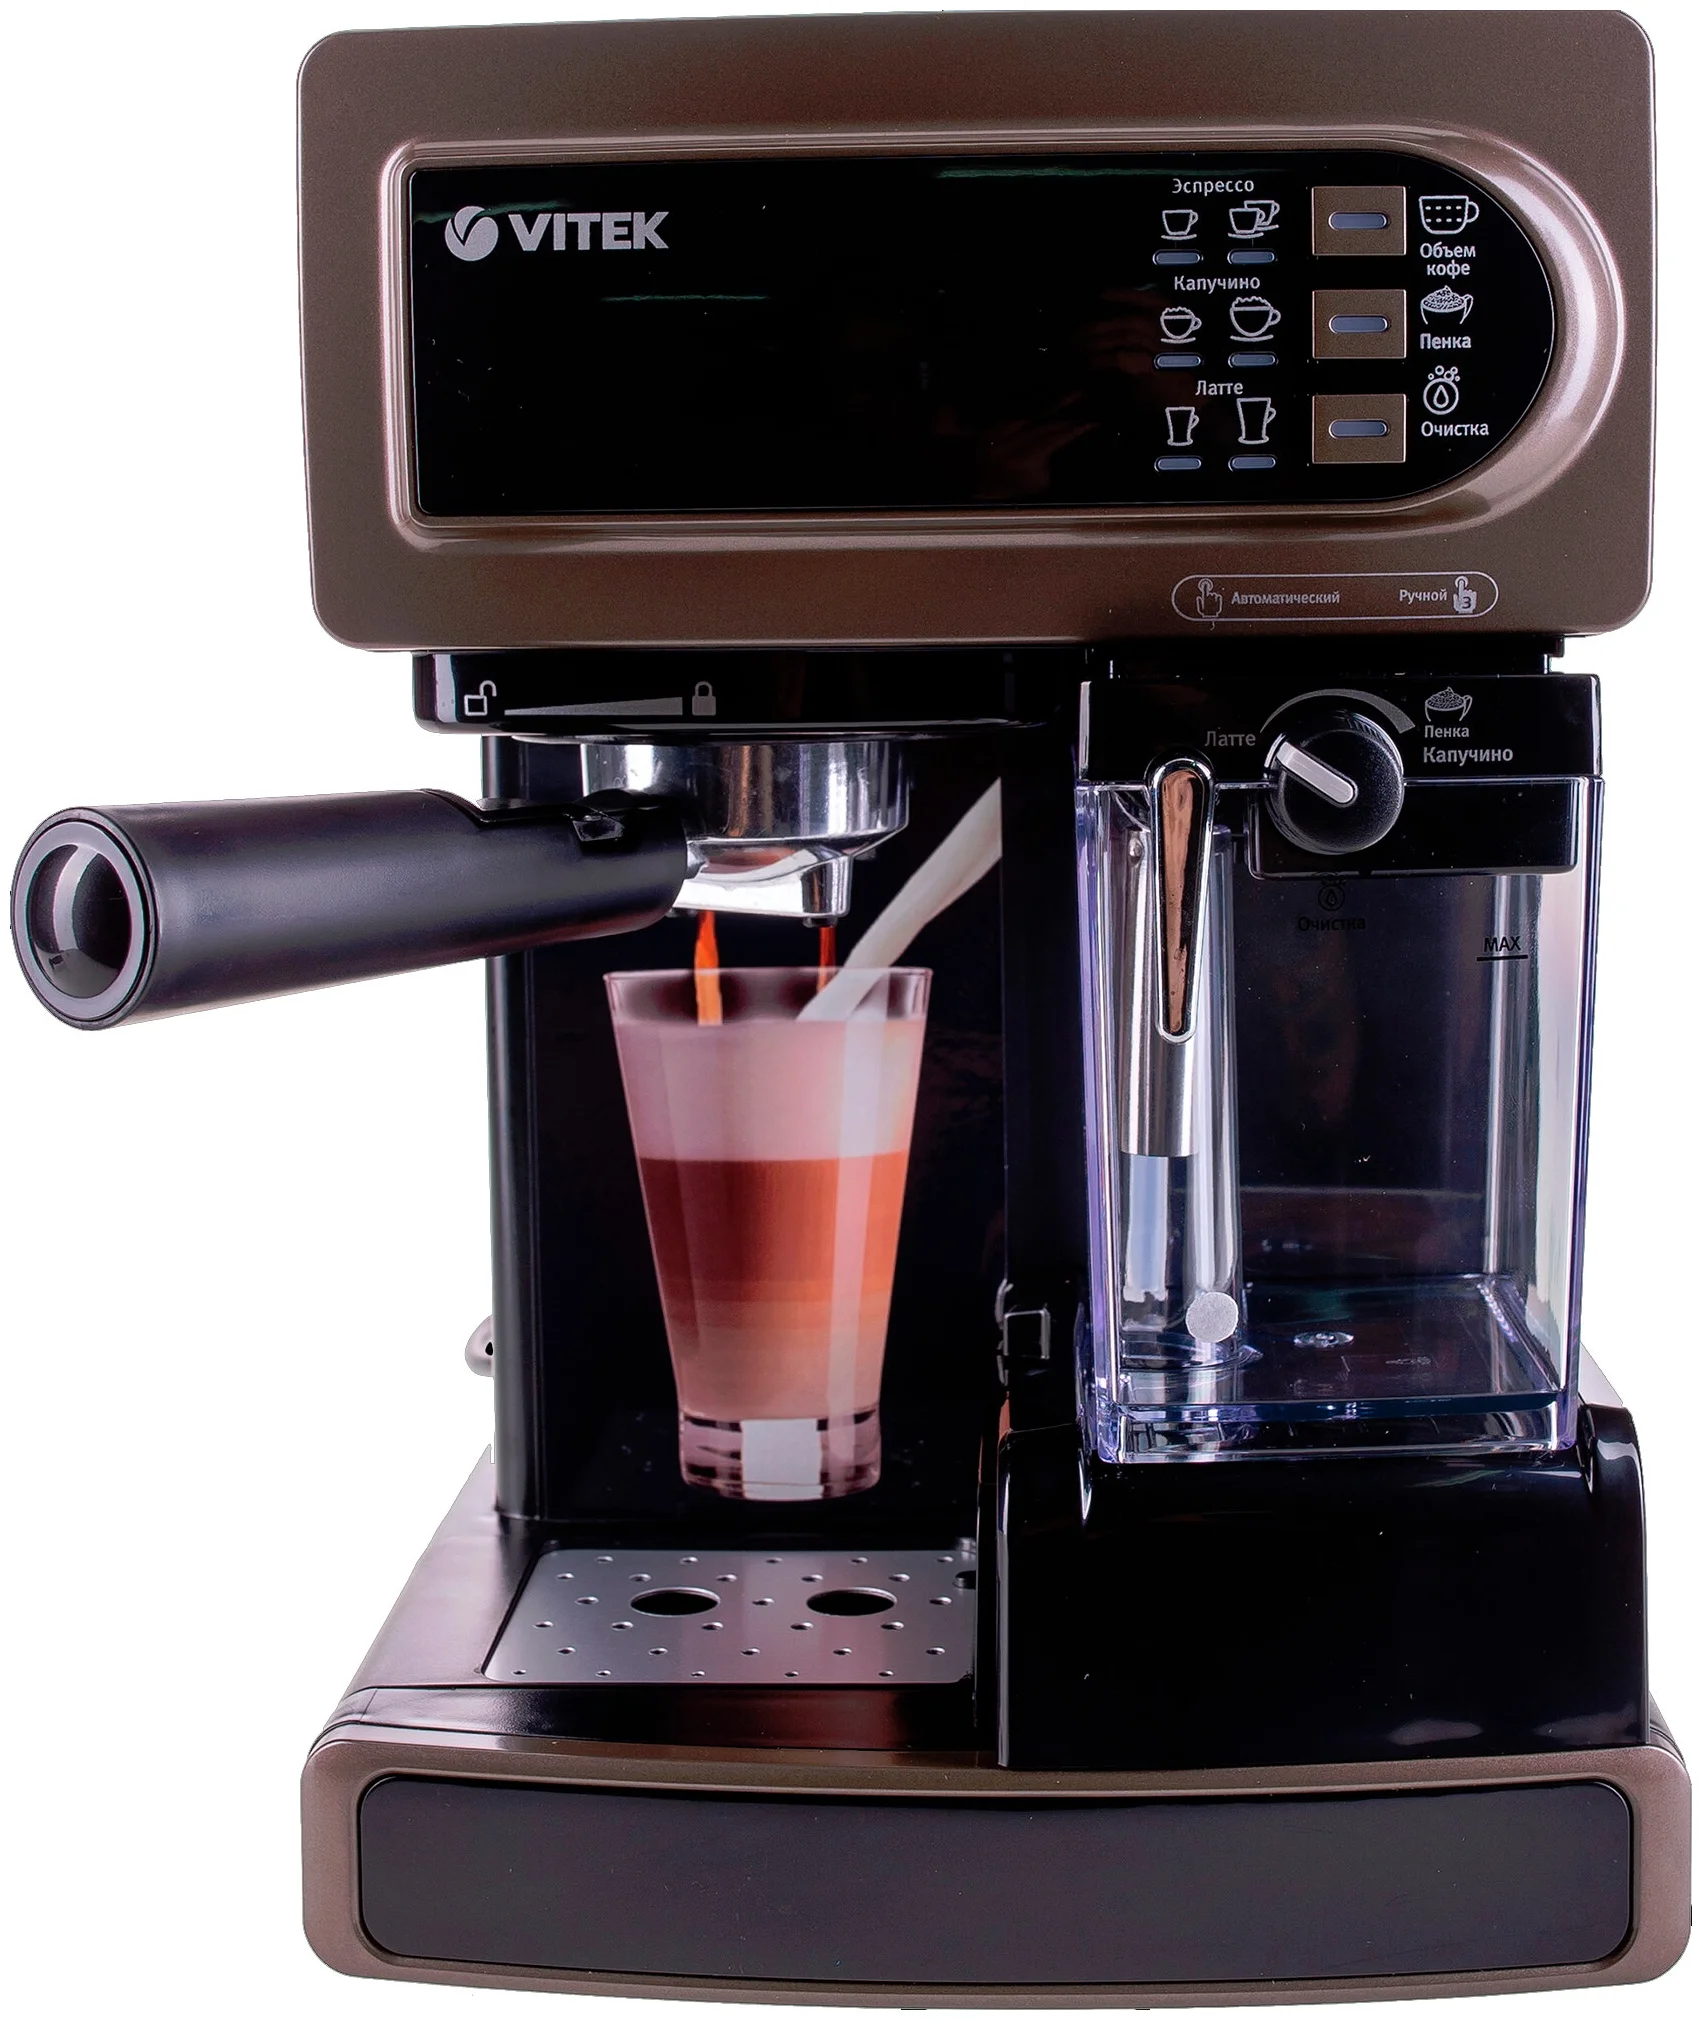 VITEK VT-1517 BN - давление помпы: 15 бар